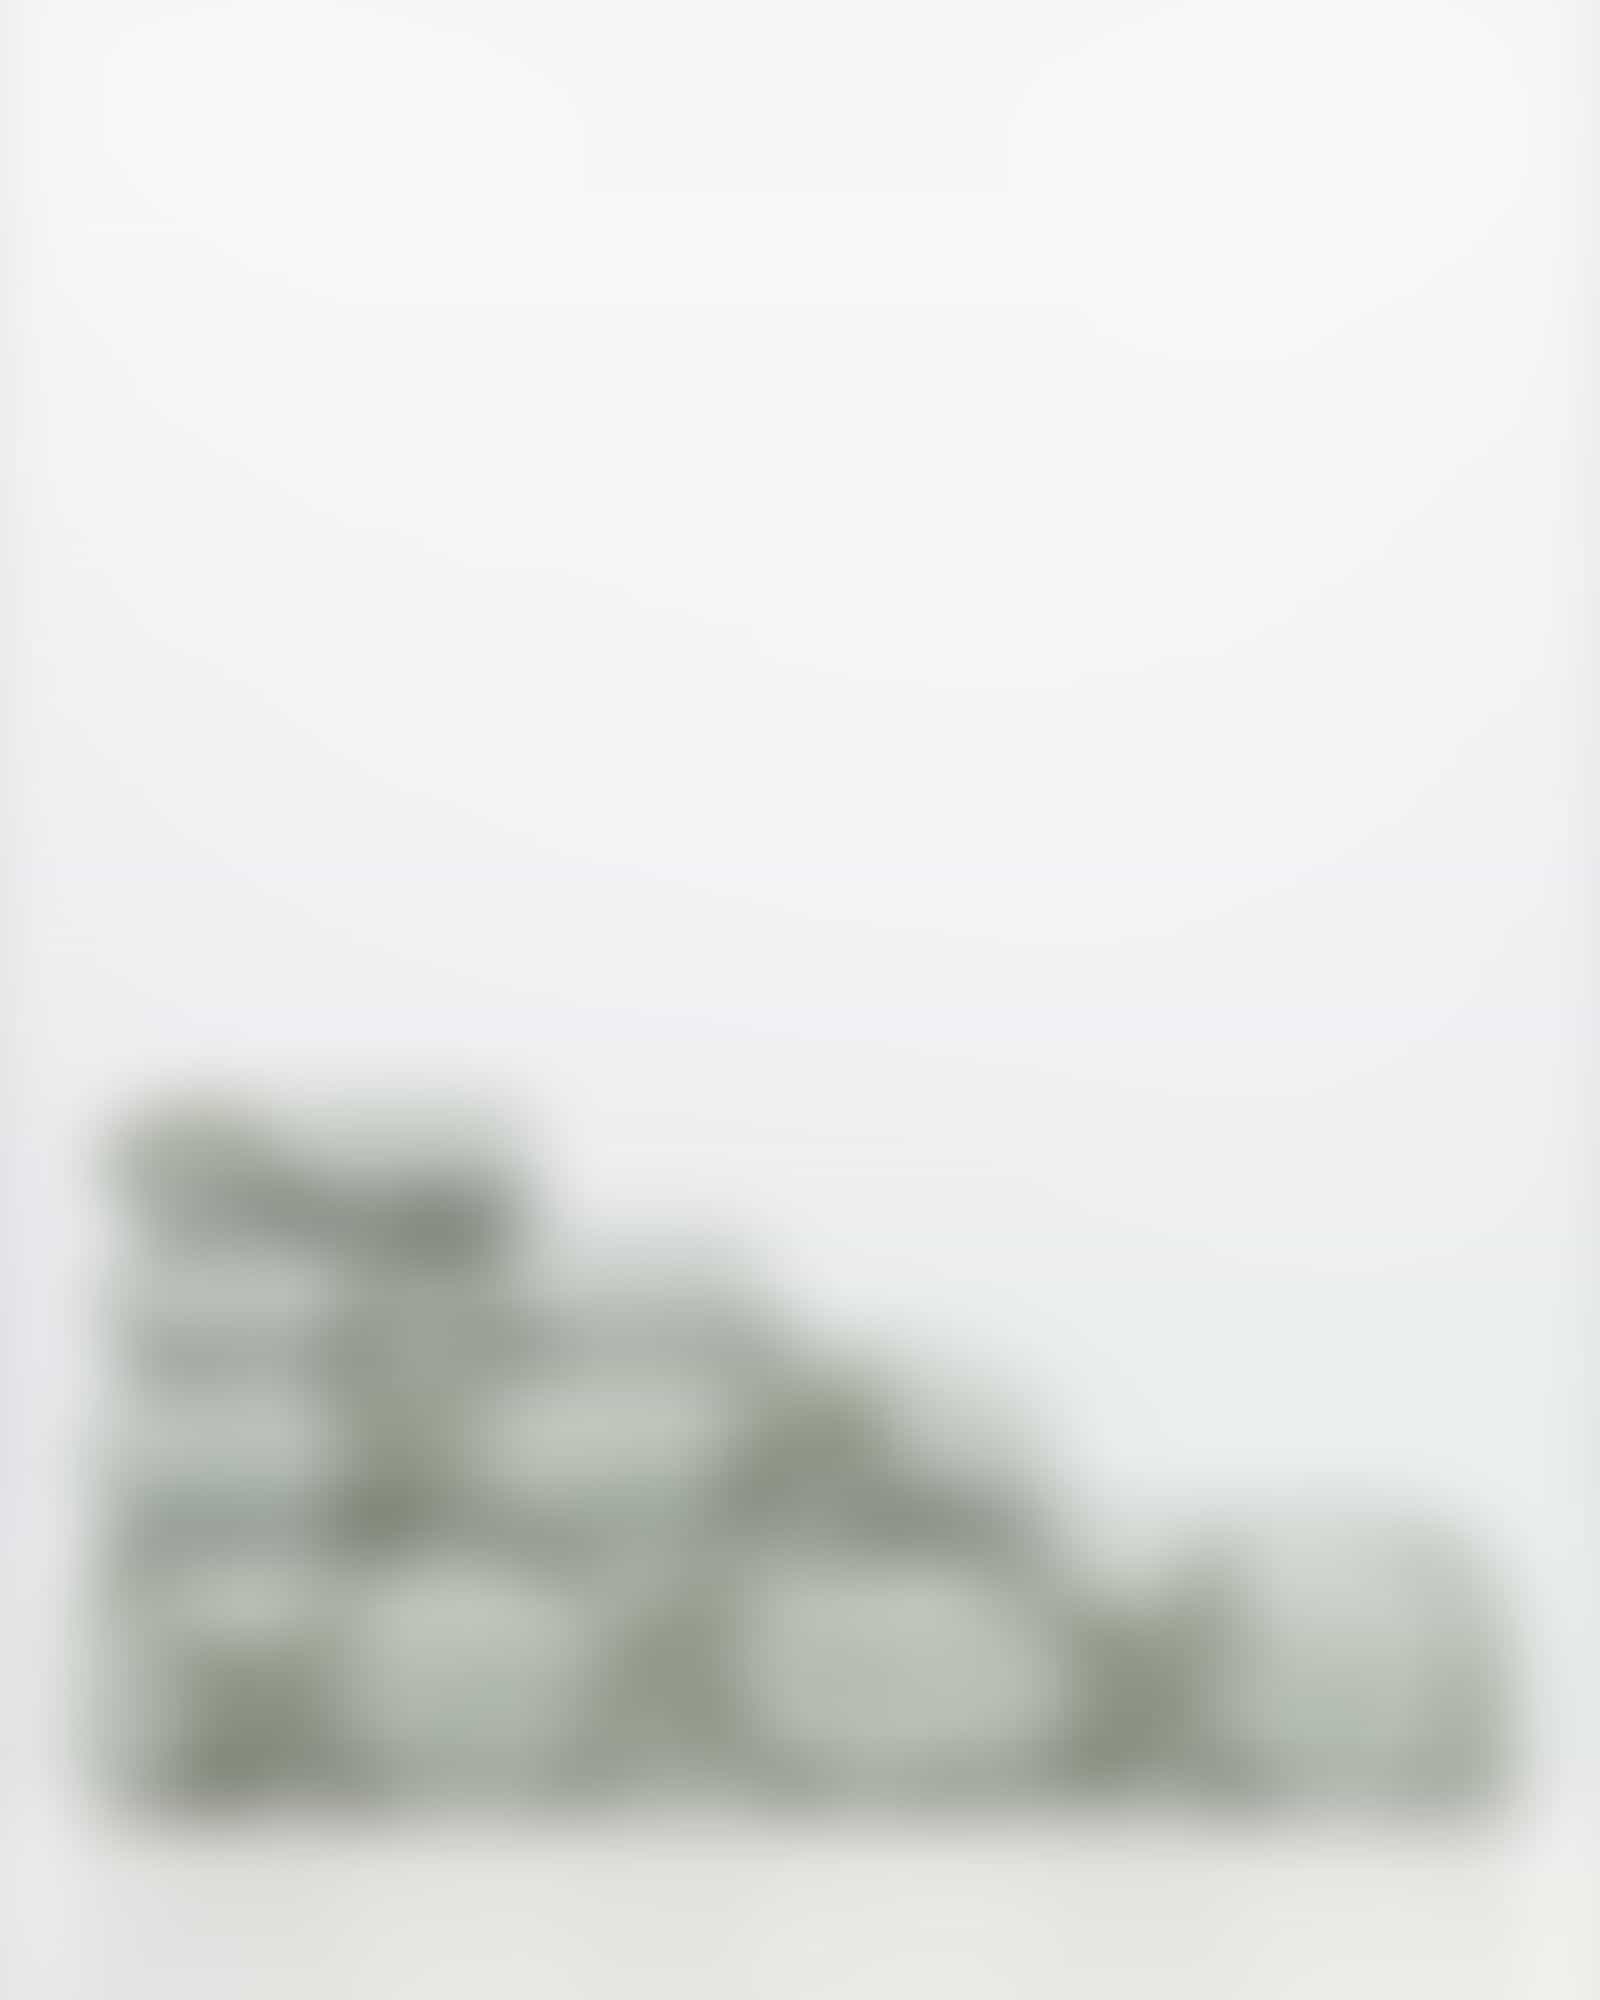 JOOP! Classic - Cornflower 1611 - Farbe: Salbei - 47 - Gästetuch 30x50 cm Detailbild 3